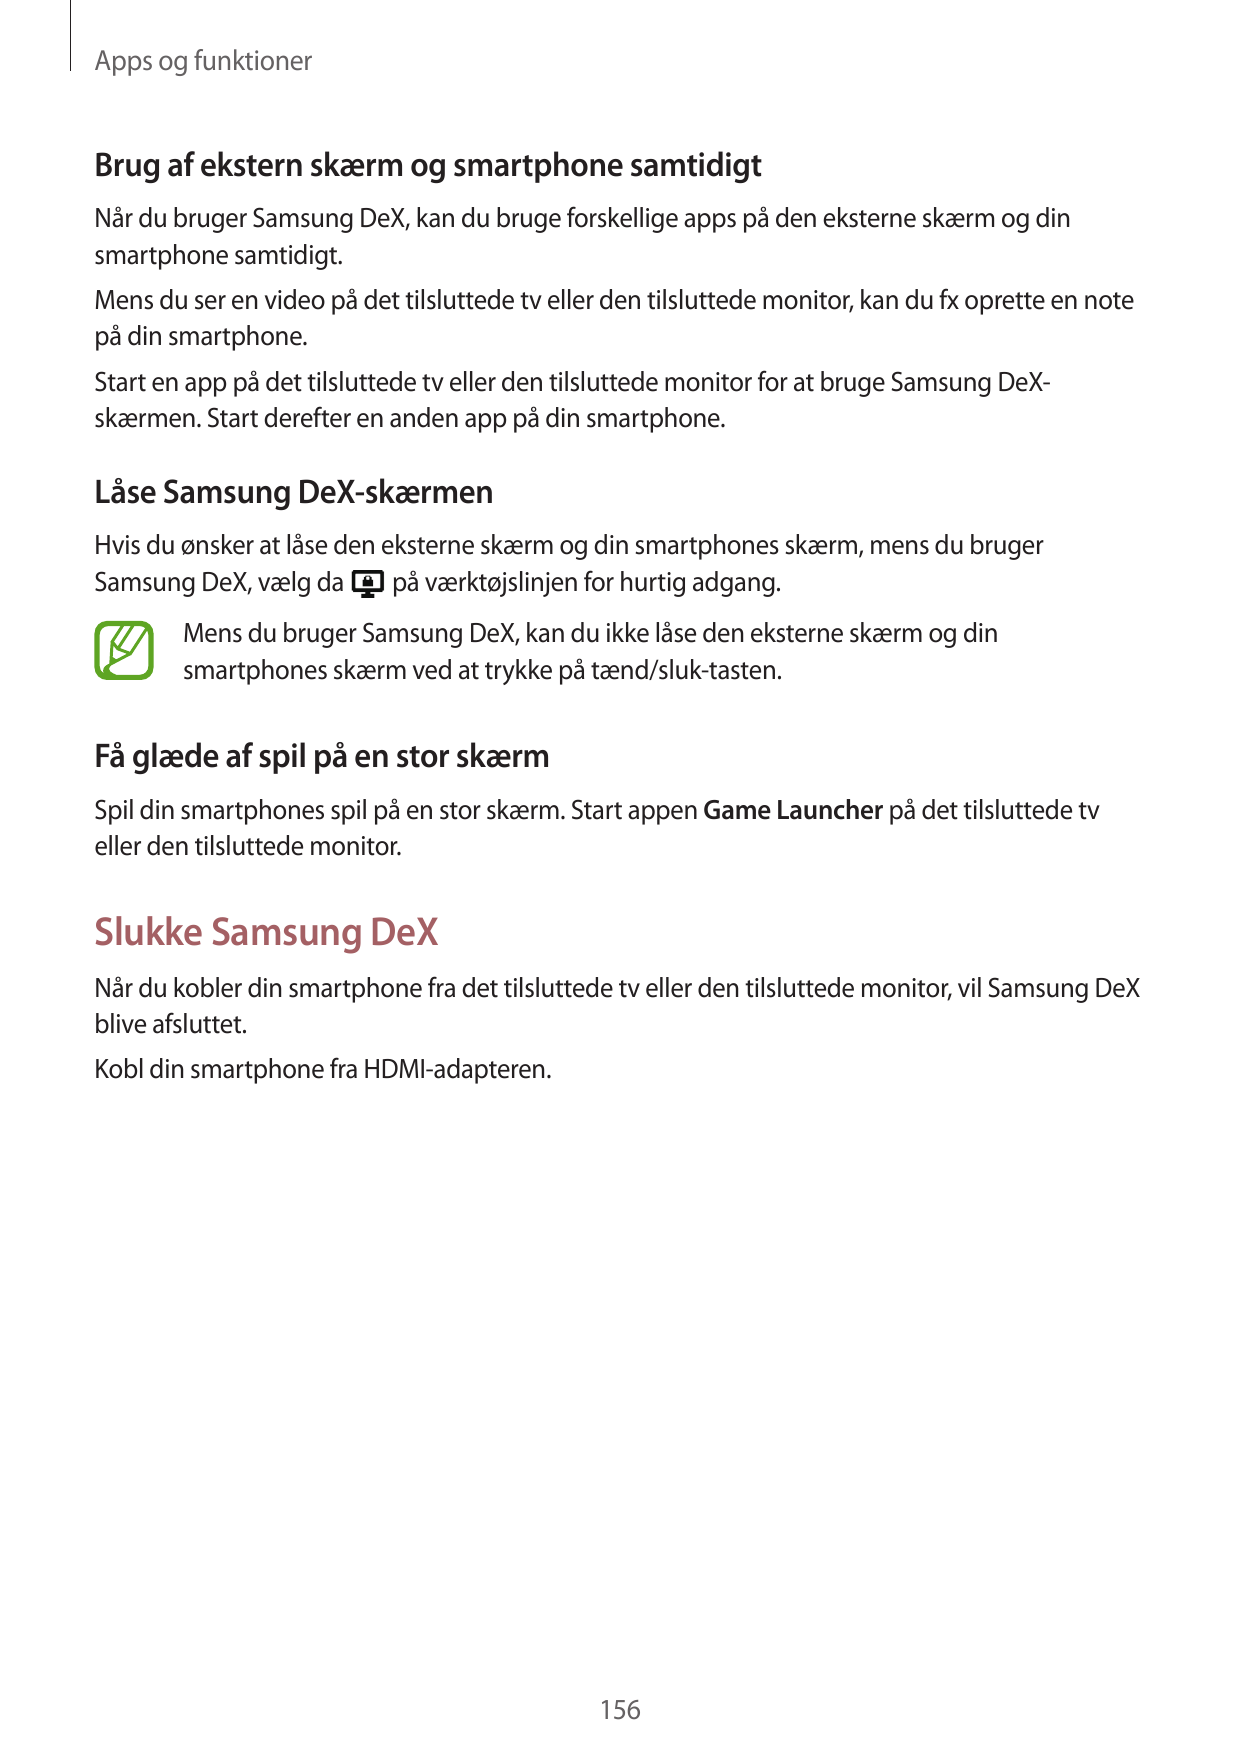 Apps og funktionerBrug af ekstern skærm og smartphone samtidigtNår du bruger Samsung DeX, kan du bruge forskellige apps på den e